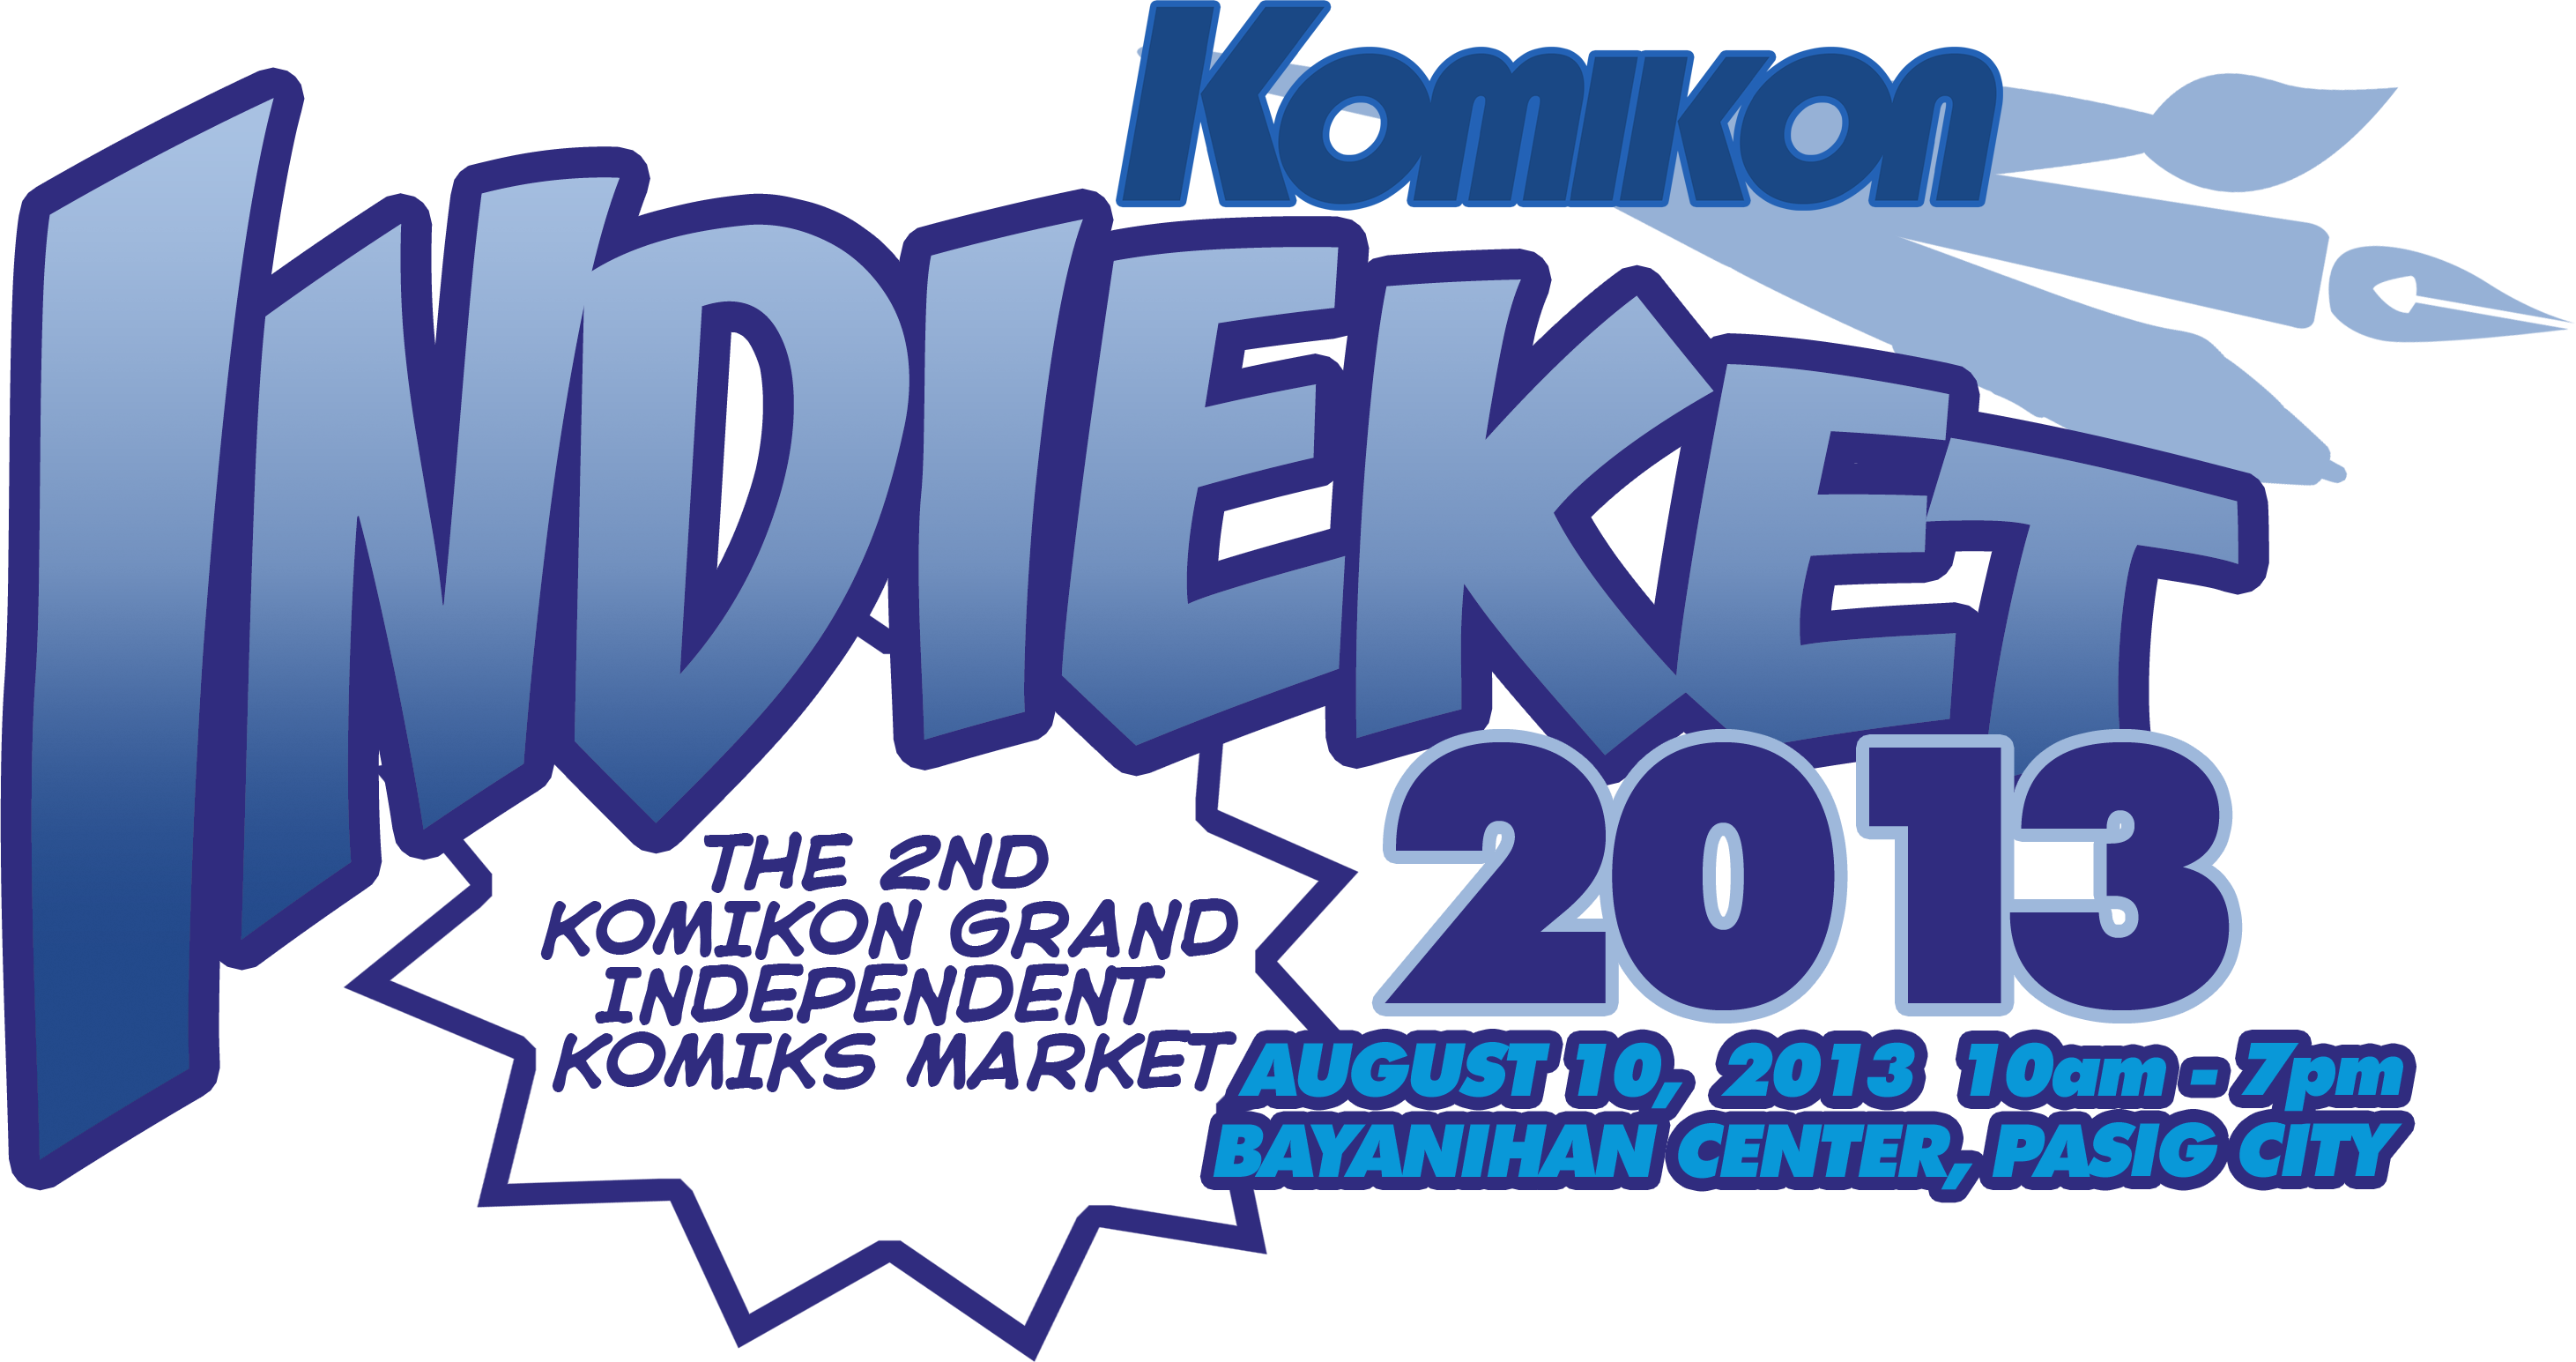 Indieket 2013 Registration Details